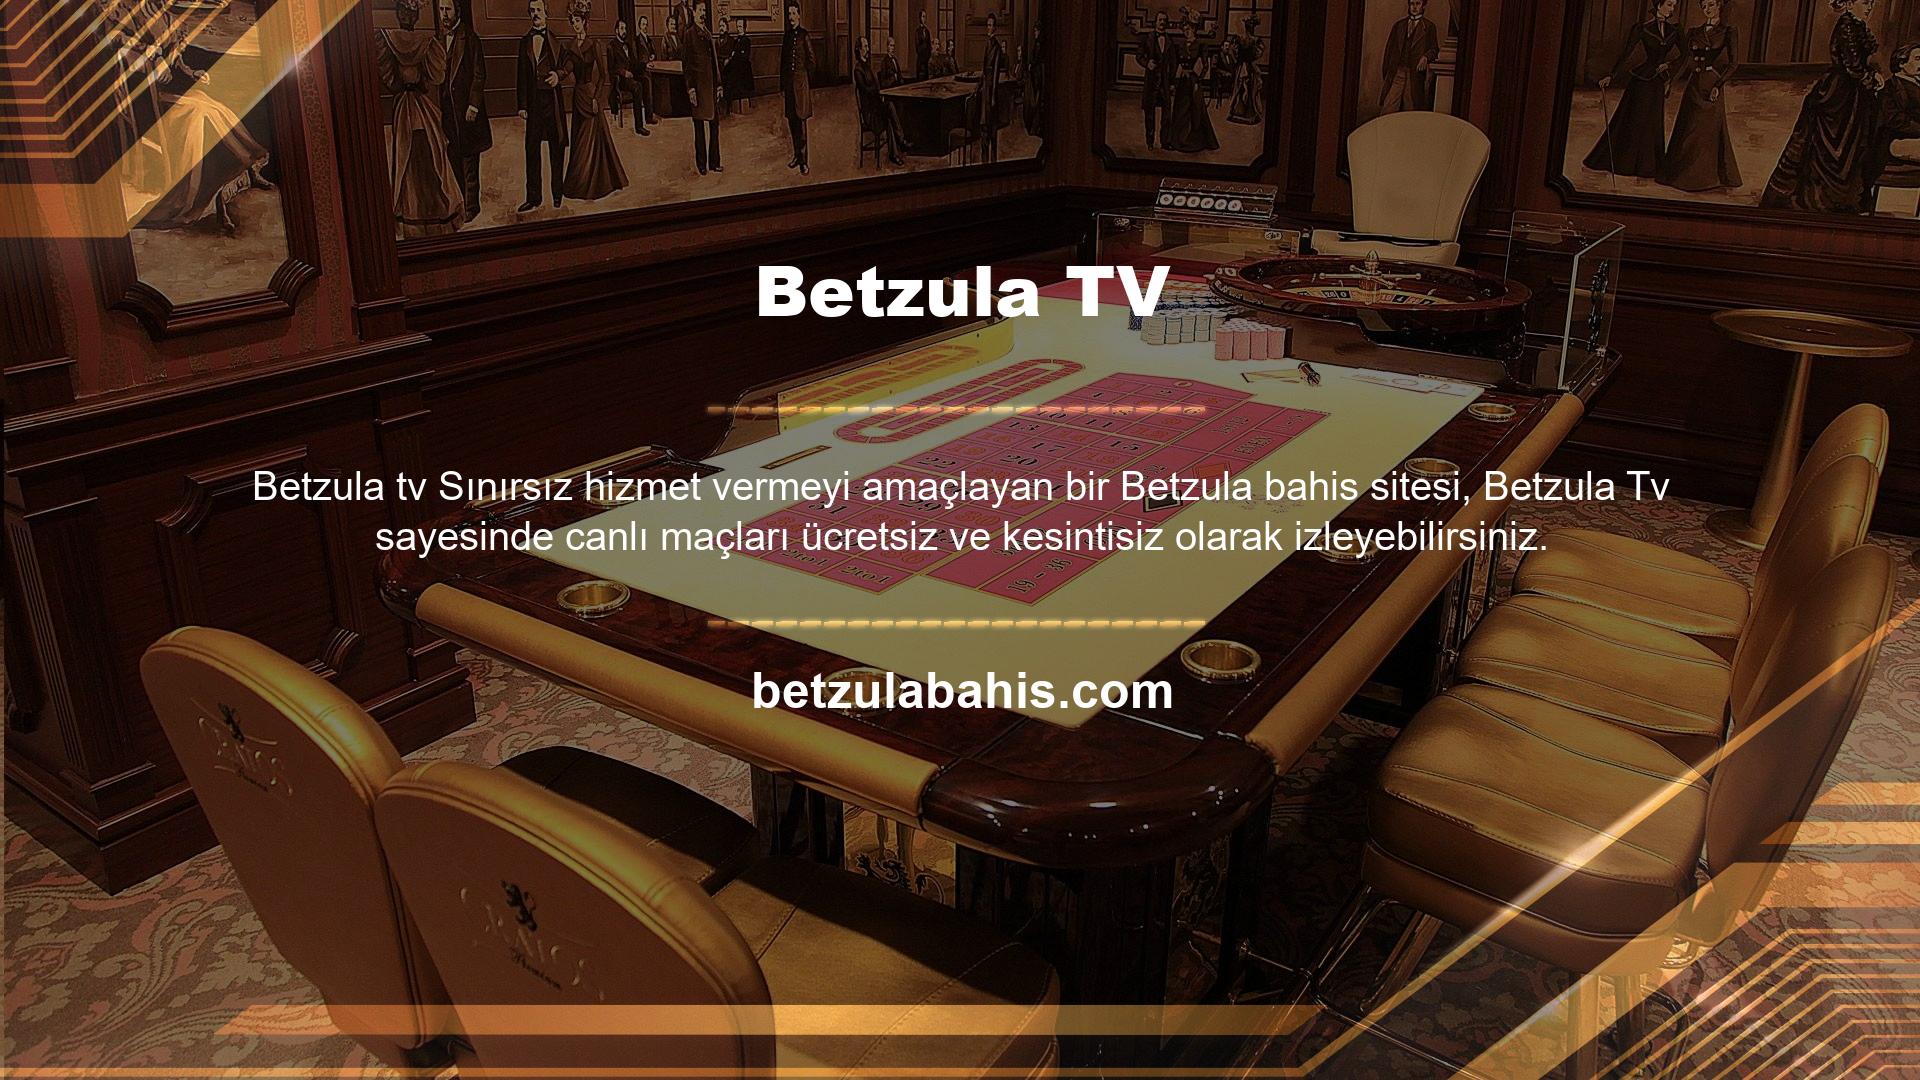 Betzula TV'ye üye olmak için öncelikle Betzula bahis sitesine üye olmalısınız